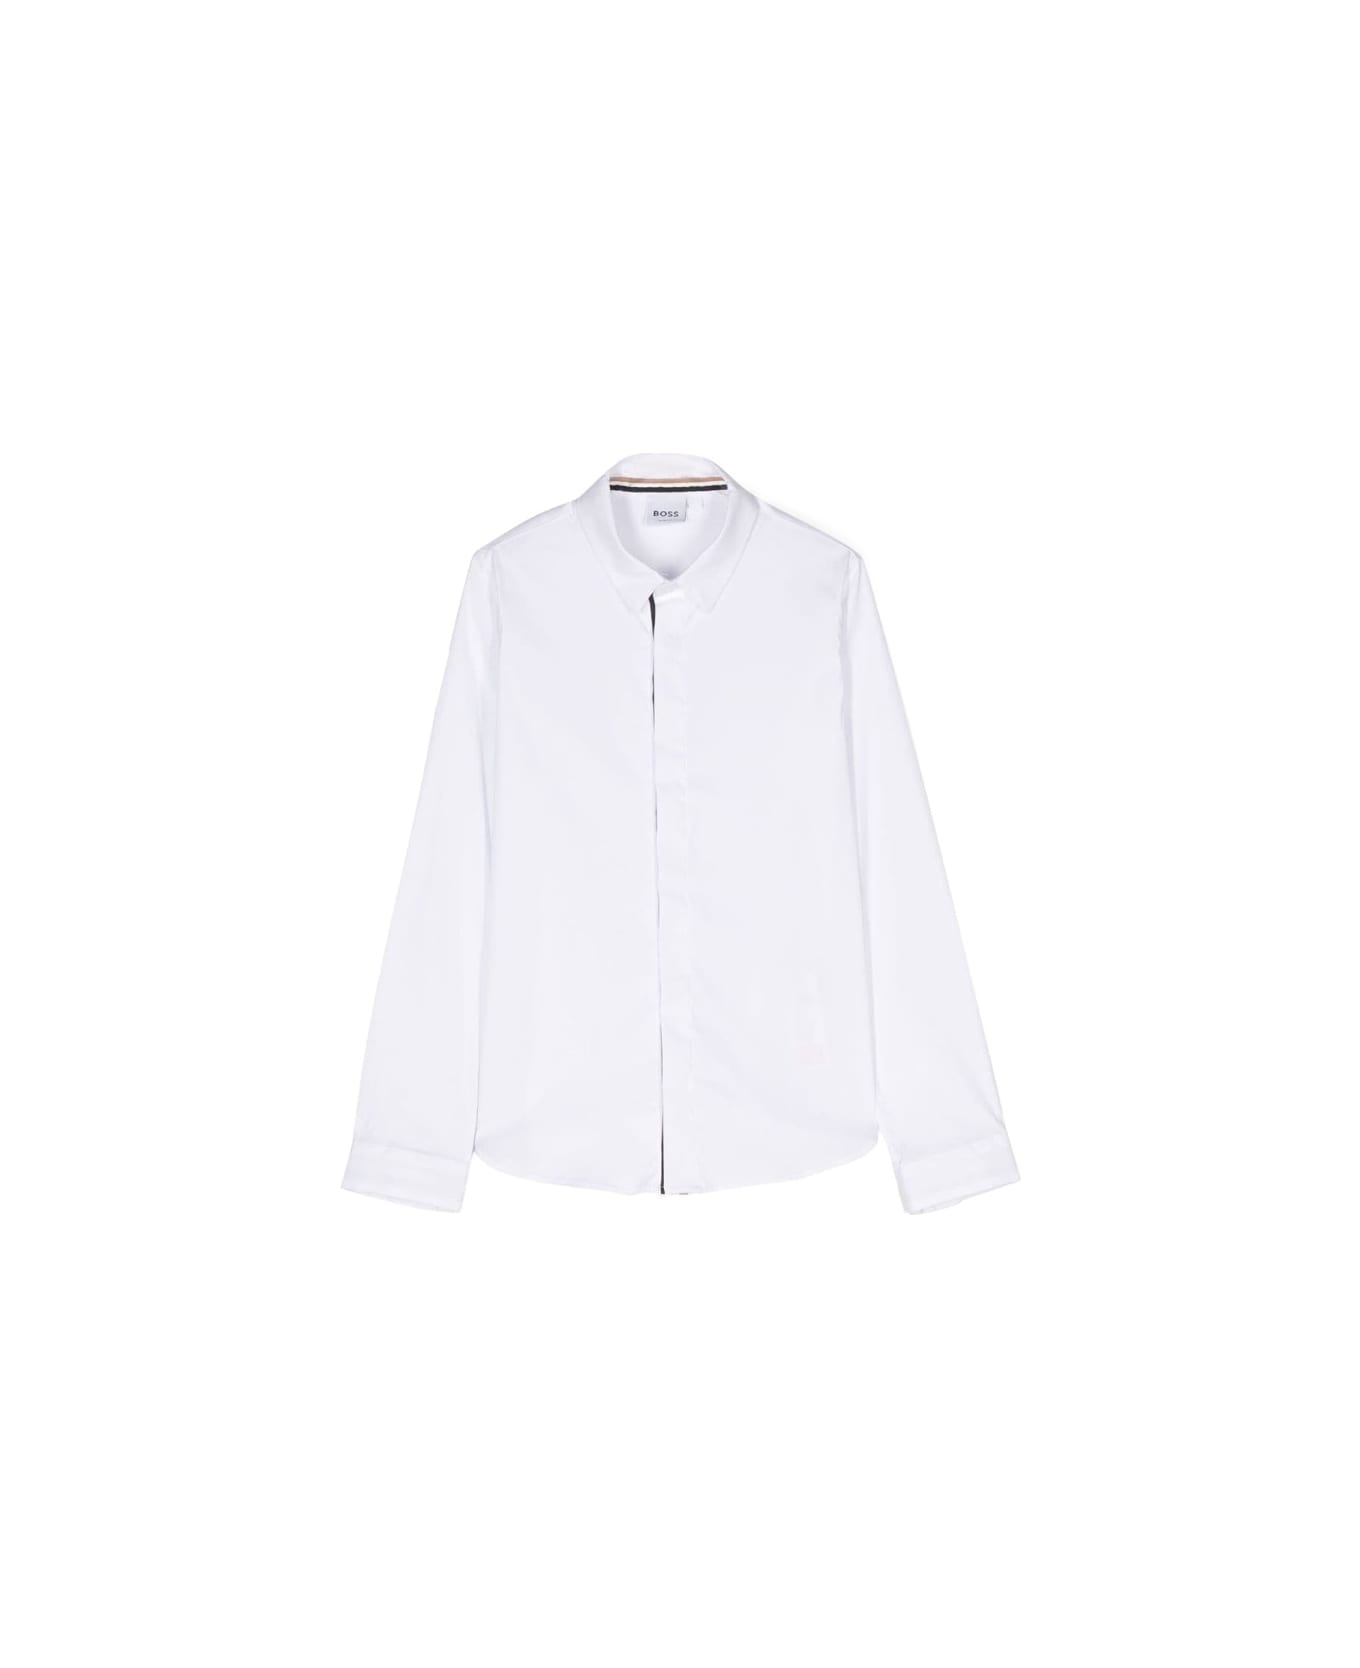 Hugo Boss Ml Shirt - WHITE シャツ